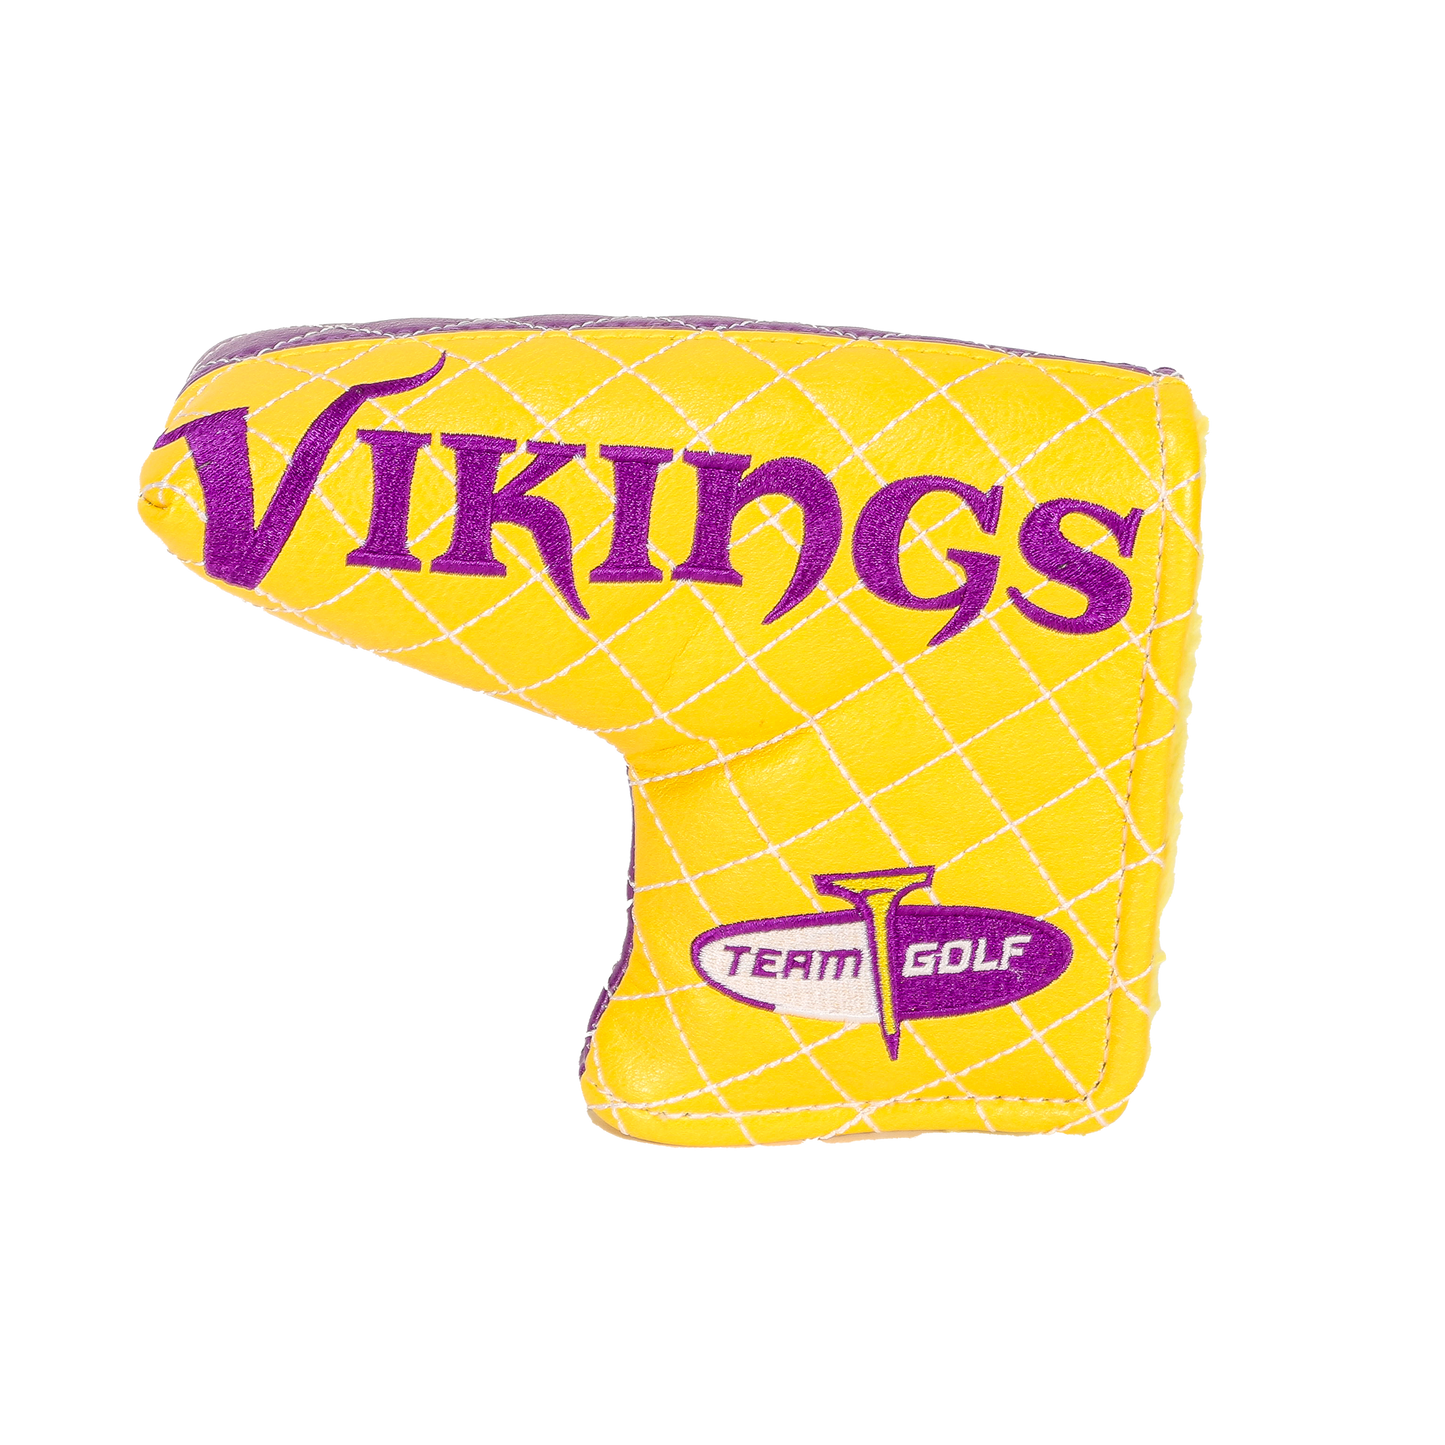 Minnesota "Vikings" Blade Putter Cover